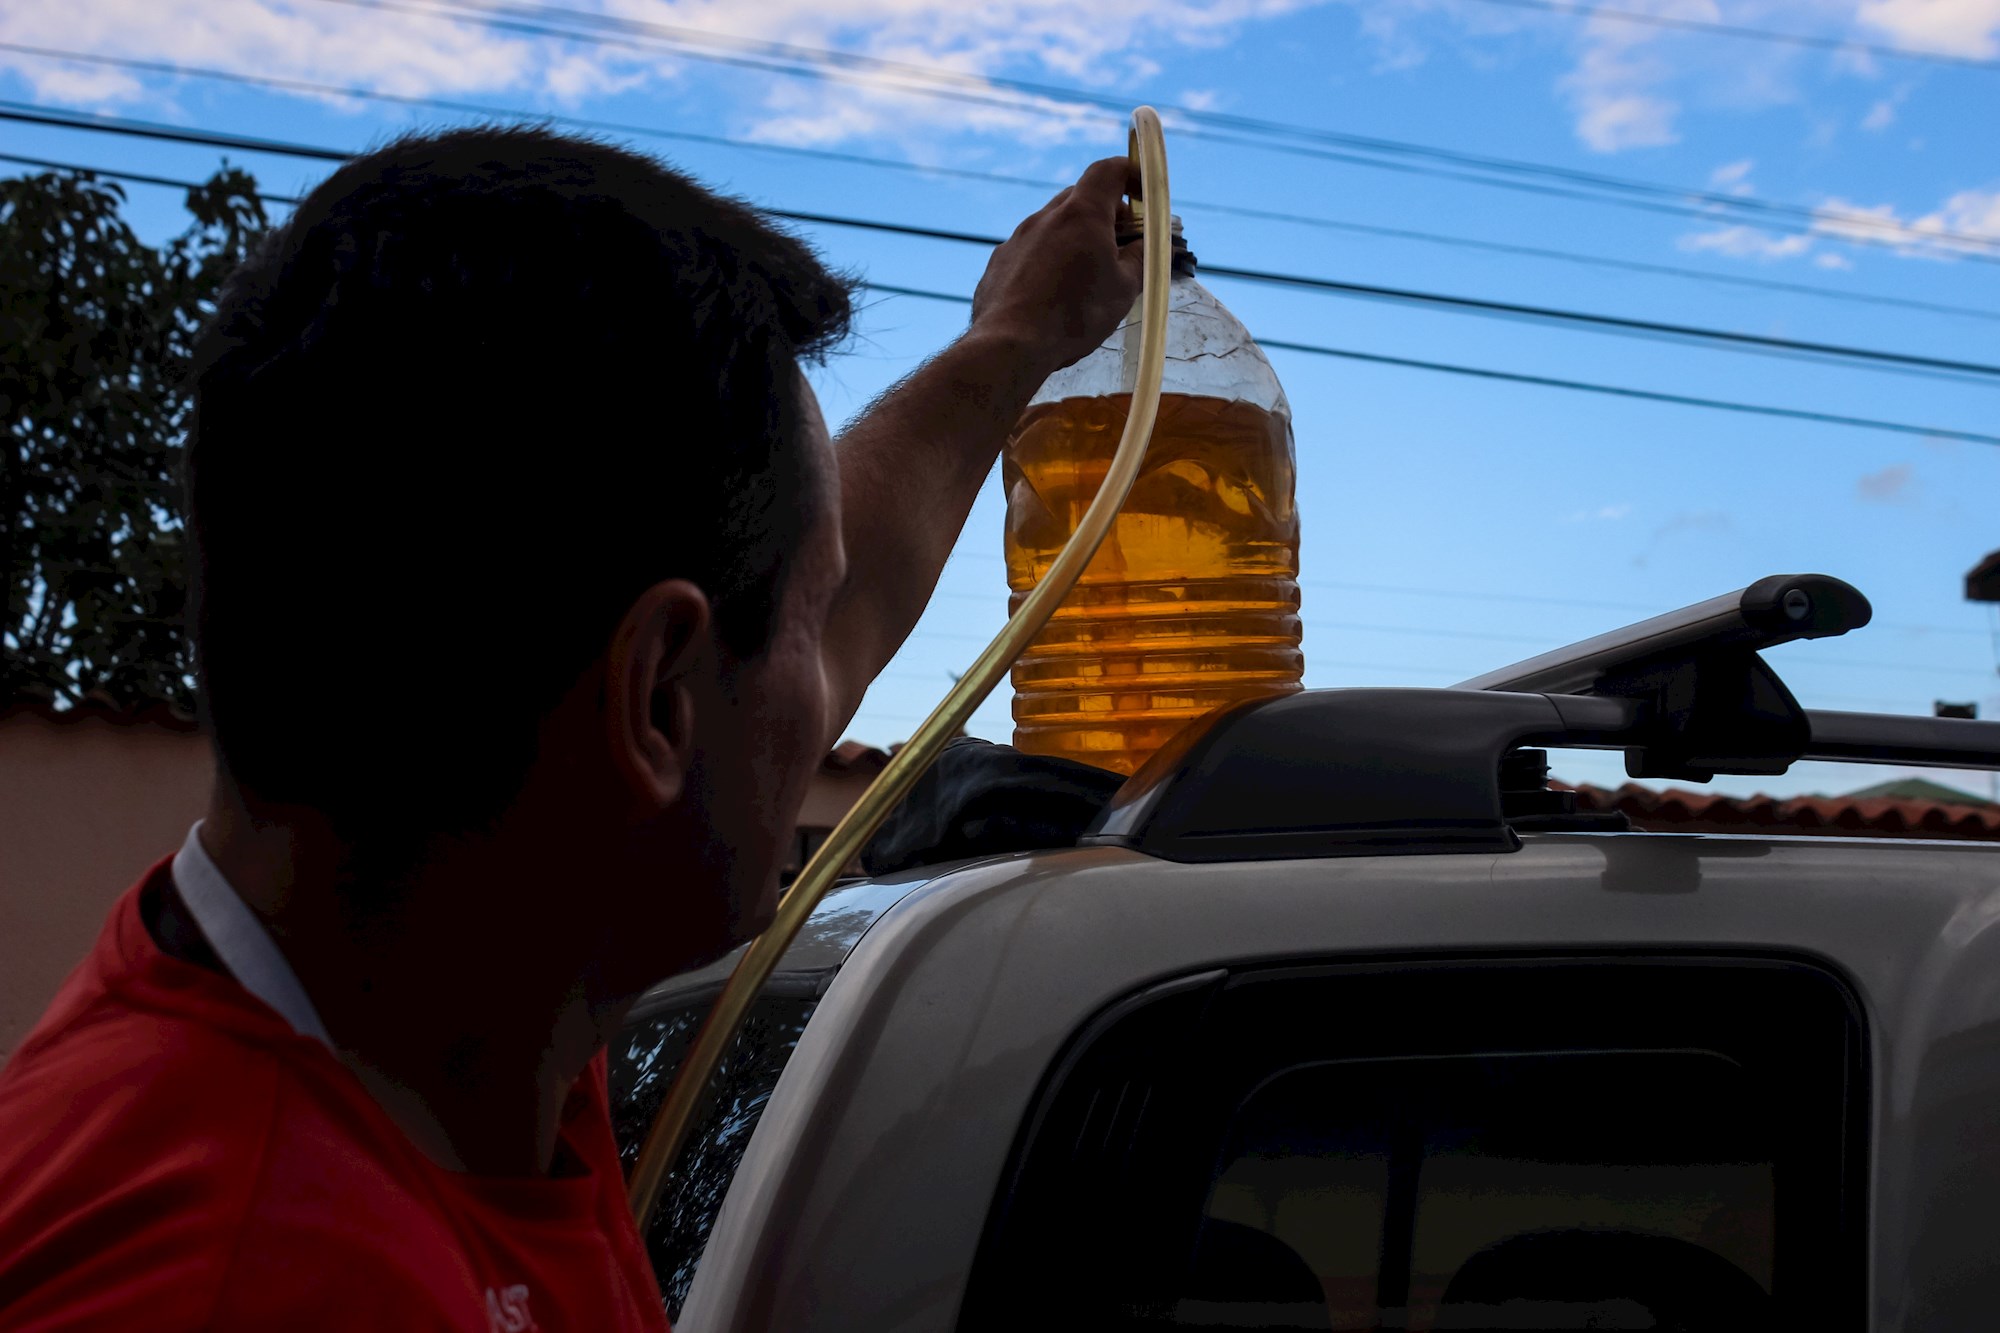 “Todo está muy bien organizado”: Famoso locutor venezolano ve normal la escasez de gasolina (Tuit)